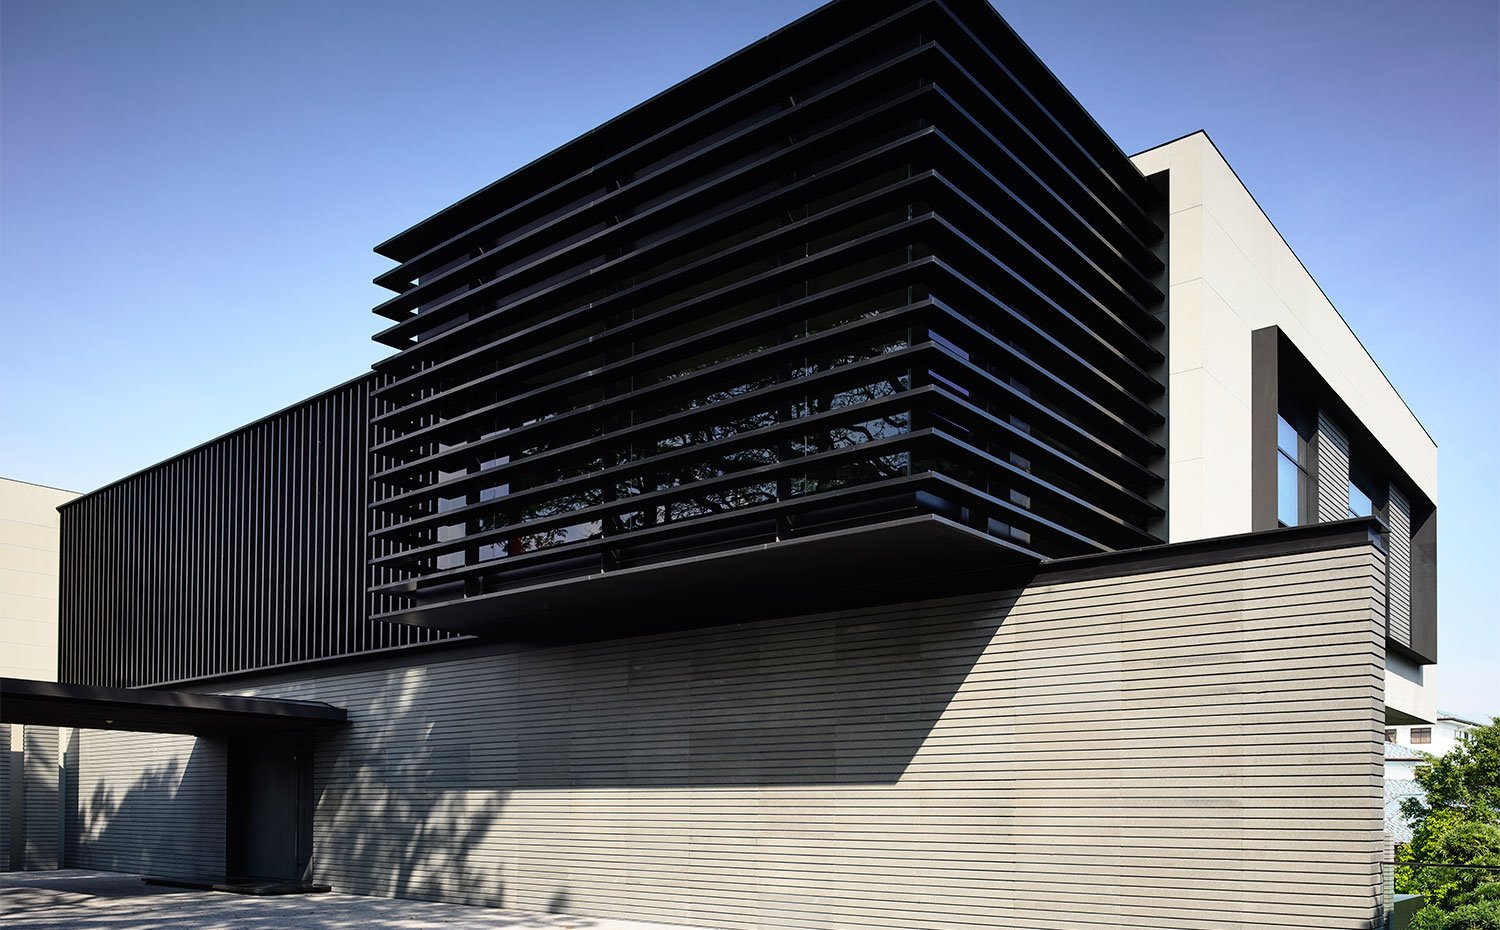 Estructura con fachada ventilada en tonos claros y oscuros.